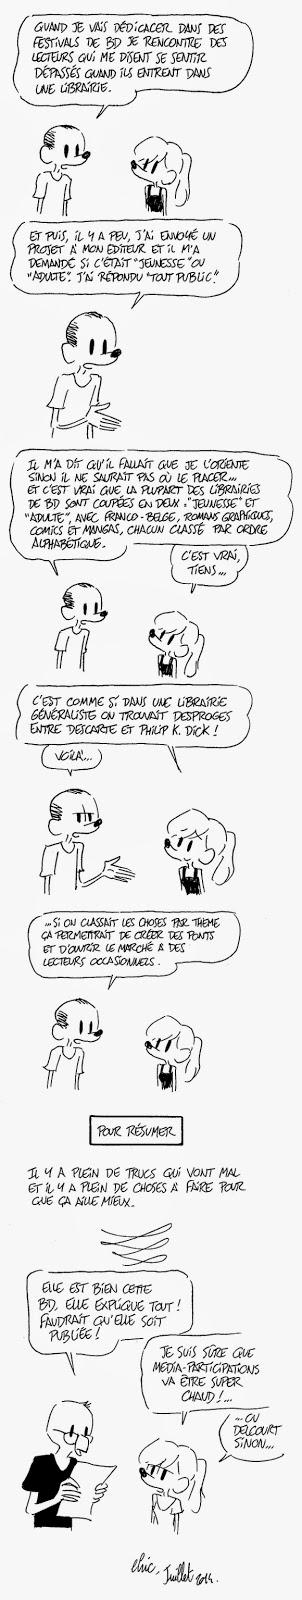 La crise de la bande dessinée francophone vue par Elric Dufau